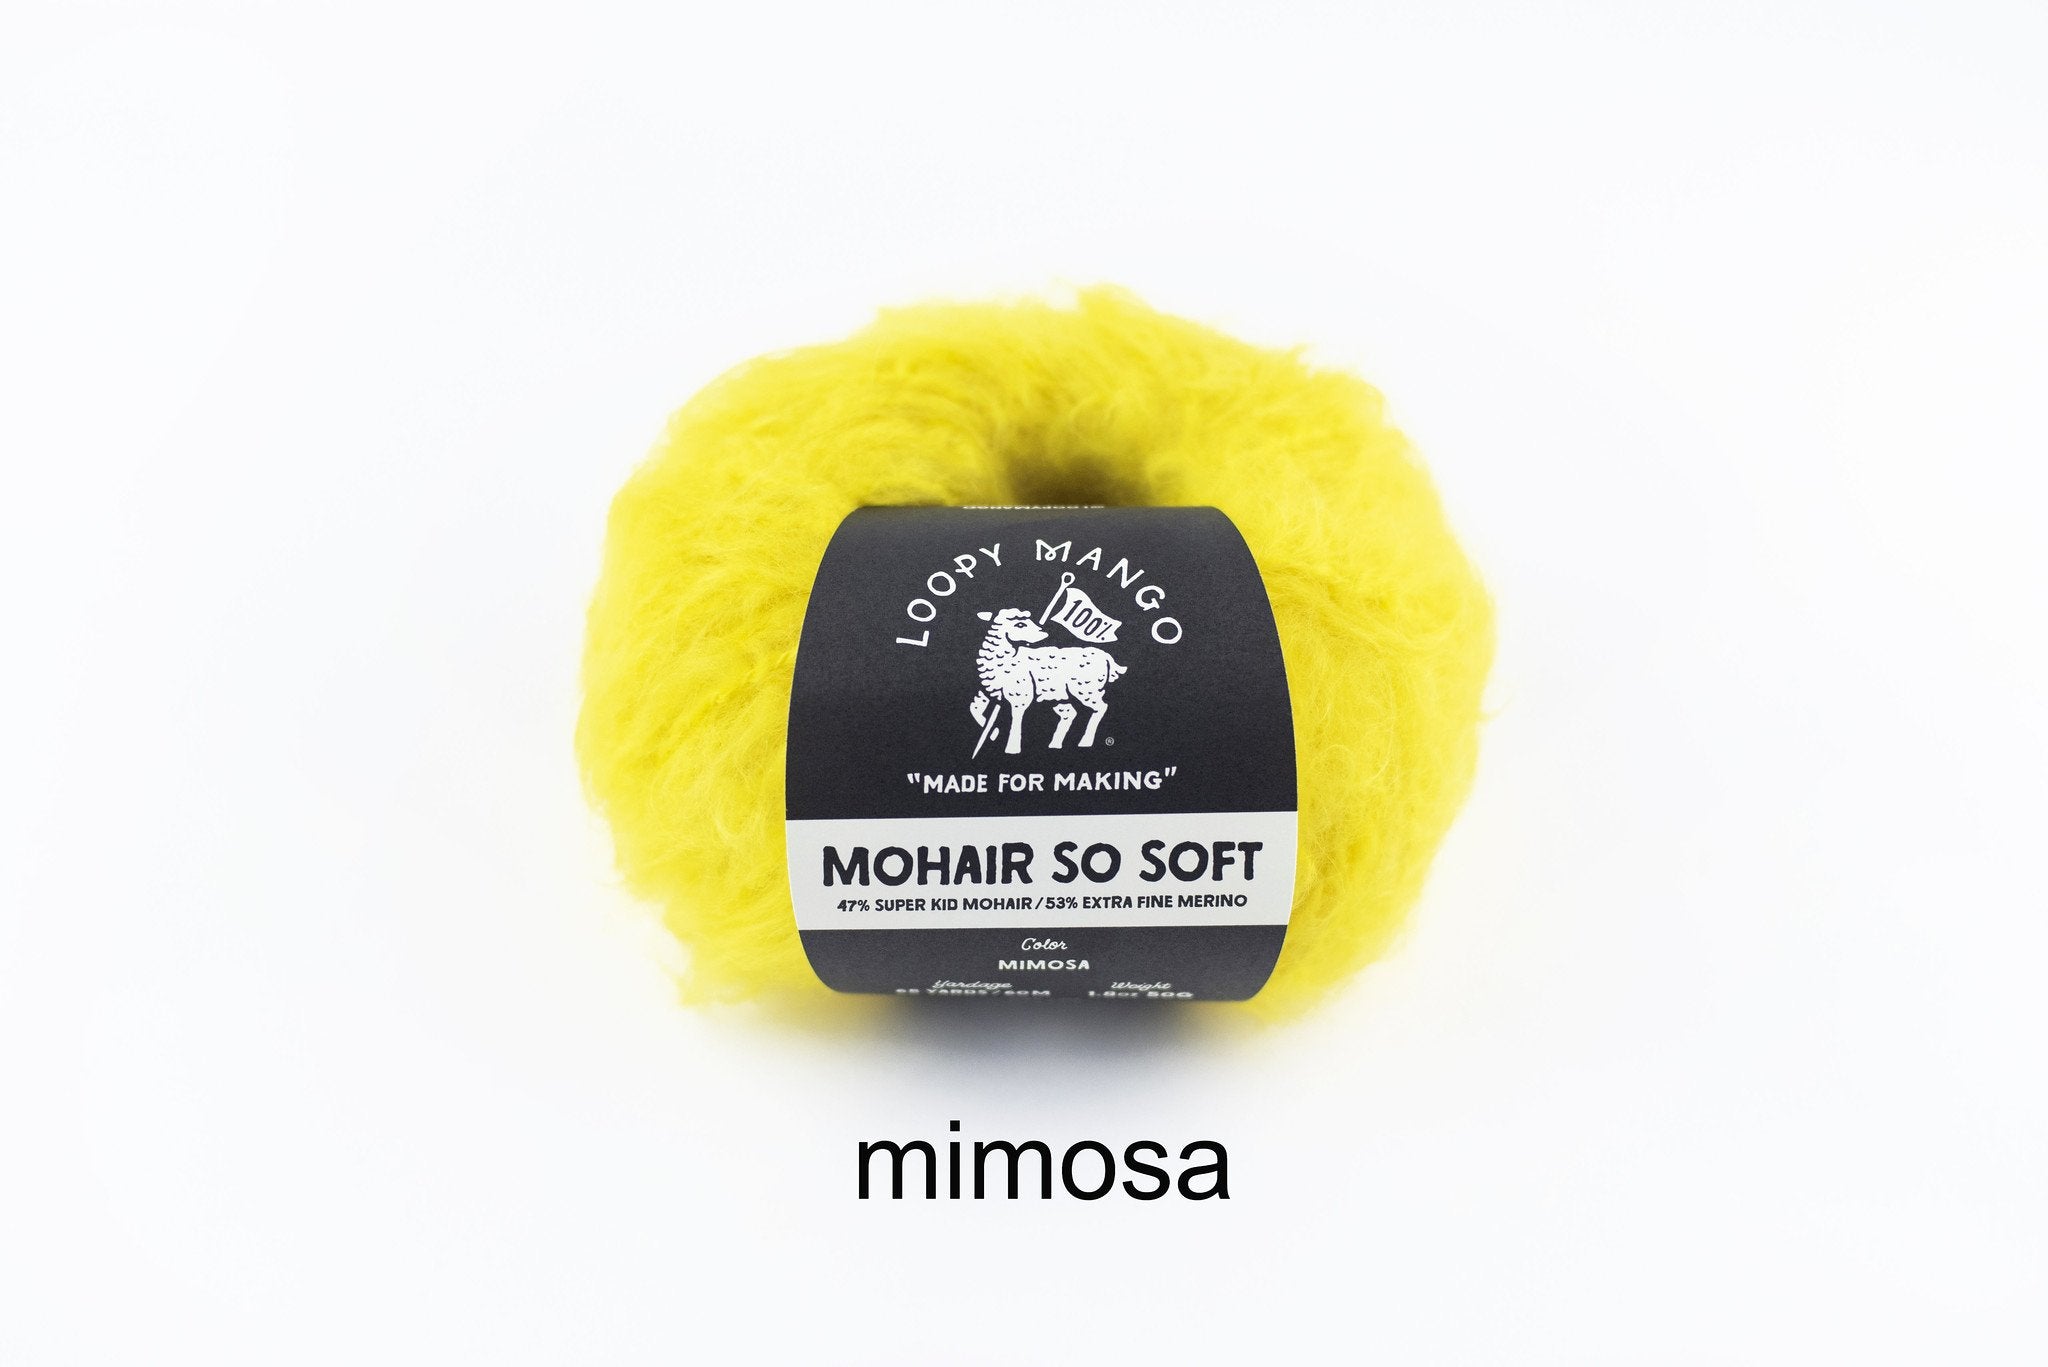 Mimosa_t_1024x1024_2x_f84cbcdb-36fe-40f8-bcb8-2a05f1ede5c4.jpg